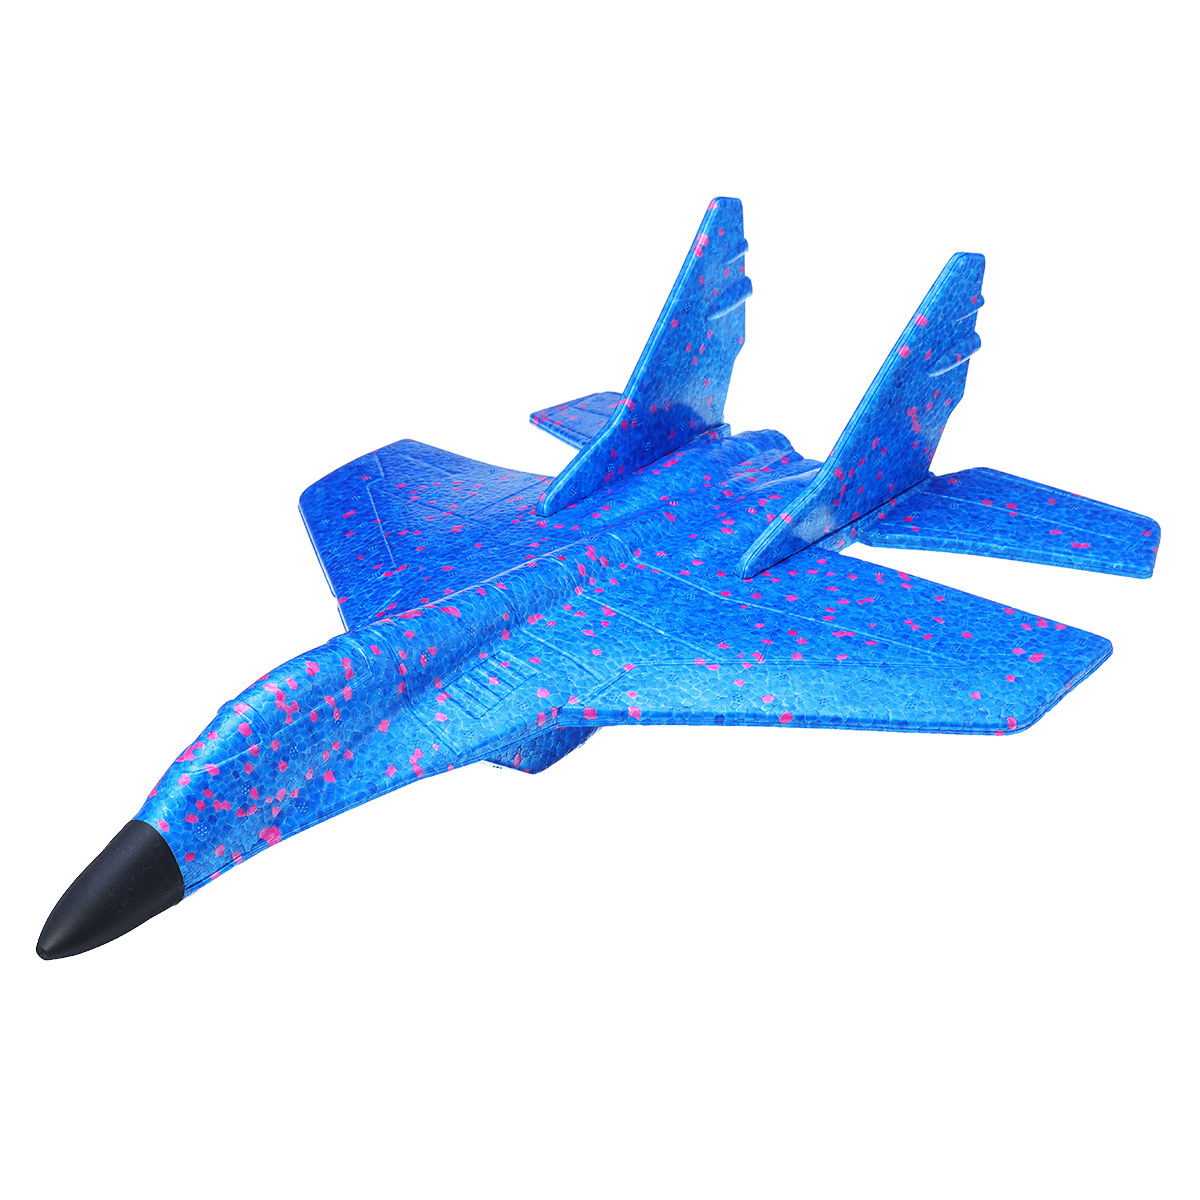 

43см EPP пена ручной бросок самолет истребитель запуск планер самолет дети весело игрушка в подарок